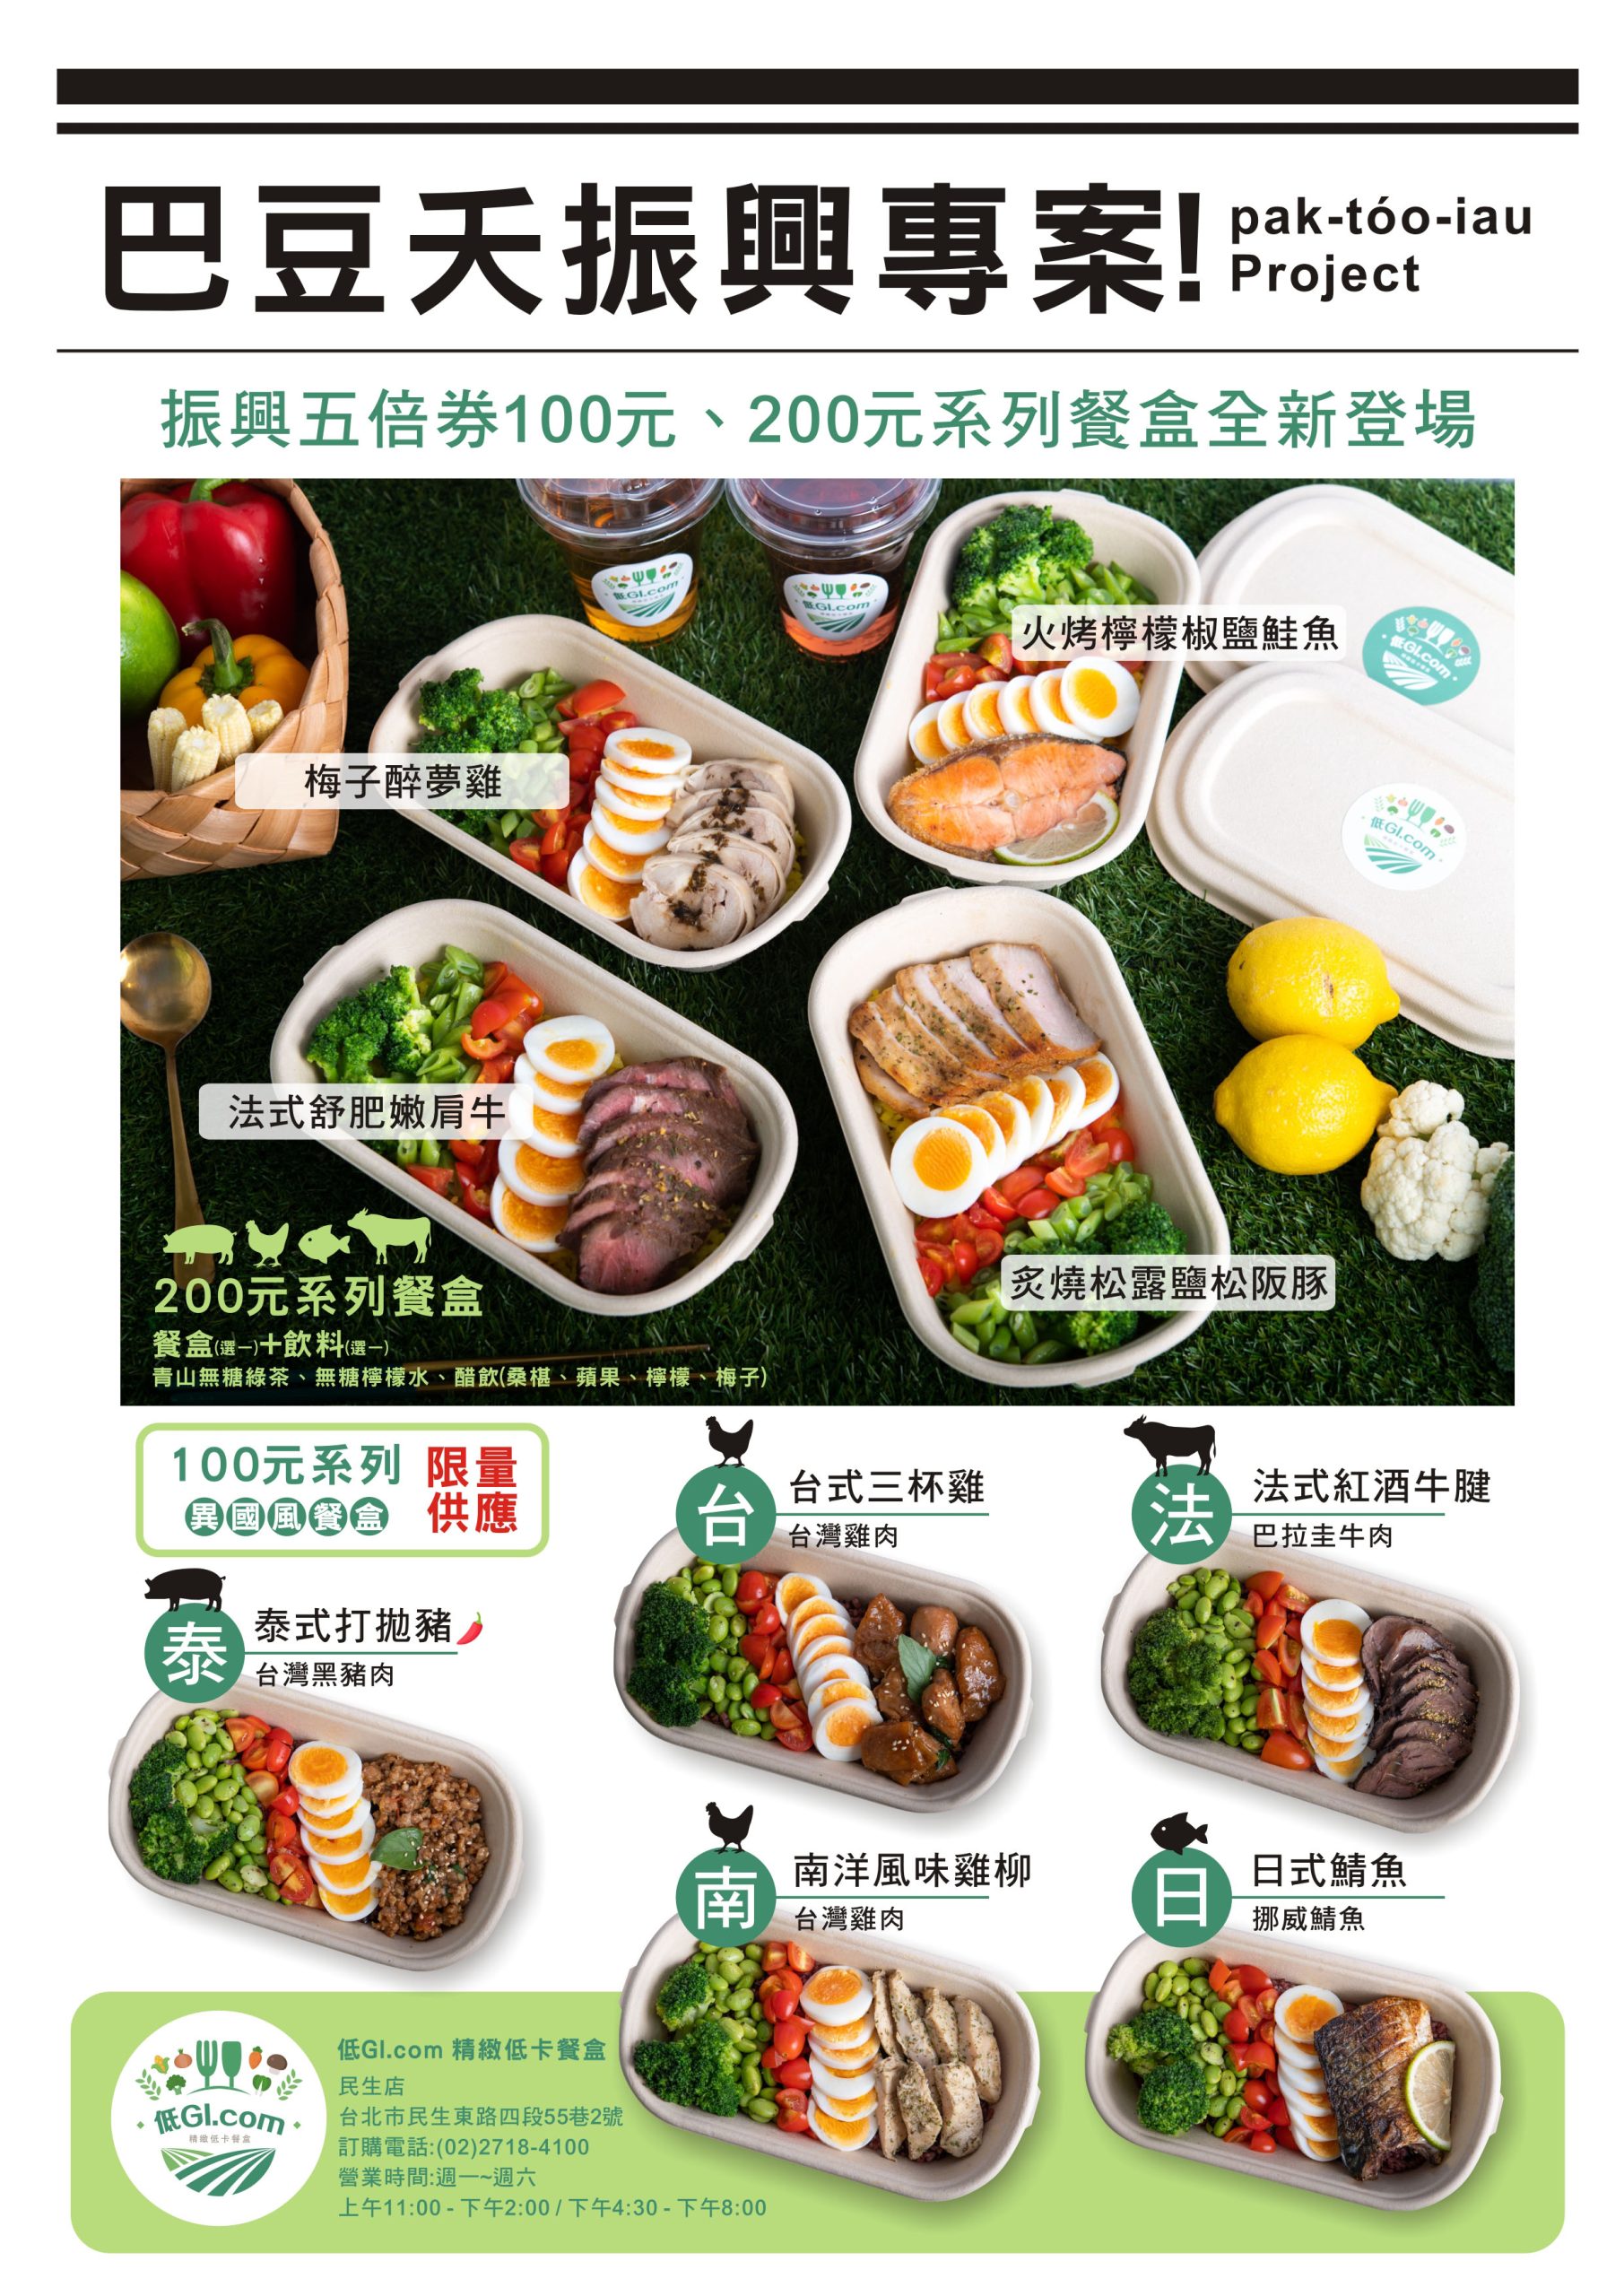 [台北美食]低GI.com精緻低卡餐盒(民生店)/100-200元給你低醣低鹽的健康餐/運動人的最佳餐點選擇